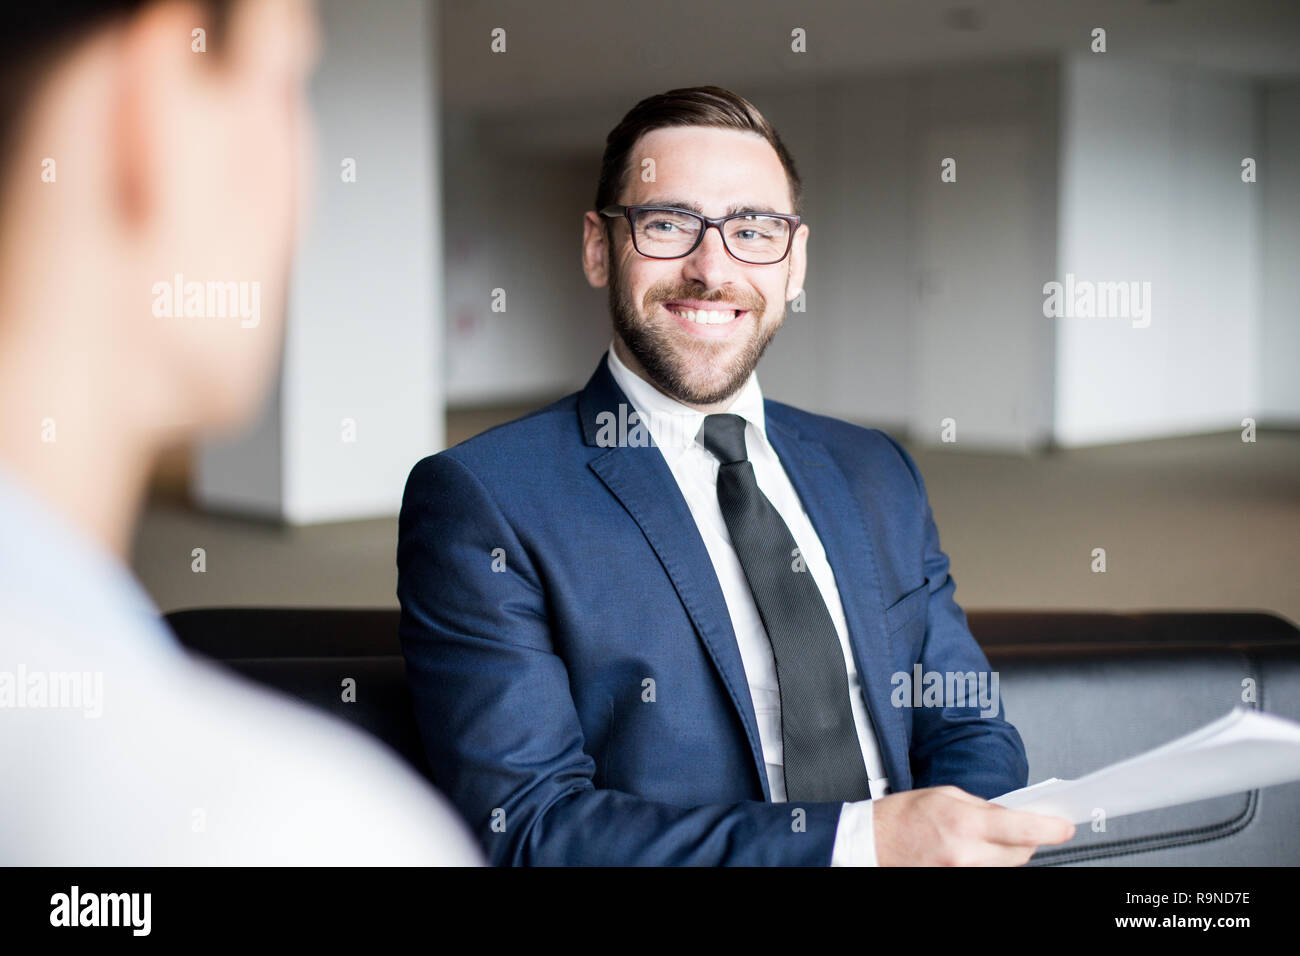 Smiling man sitting et à la personne à Banque D'Images